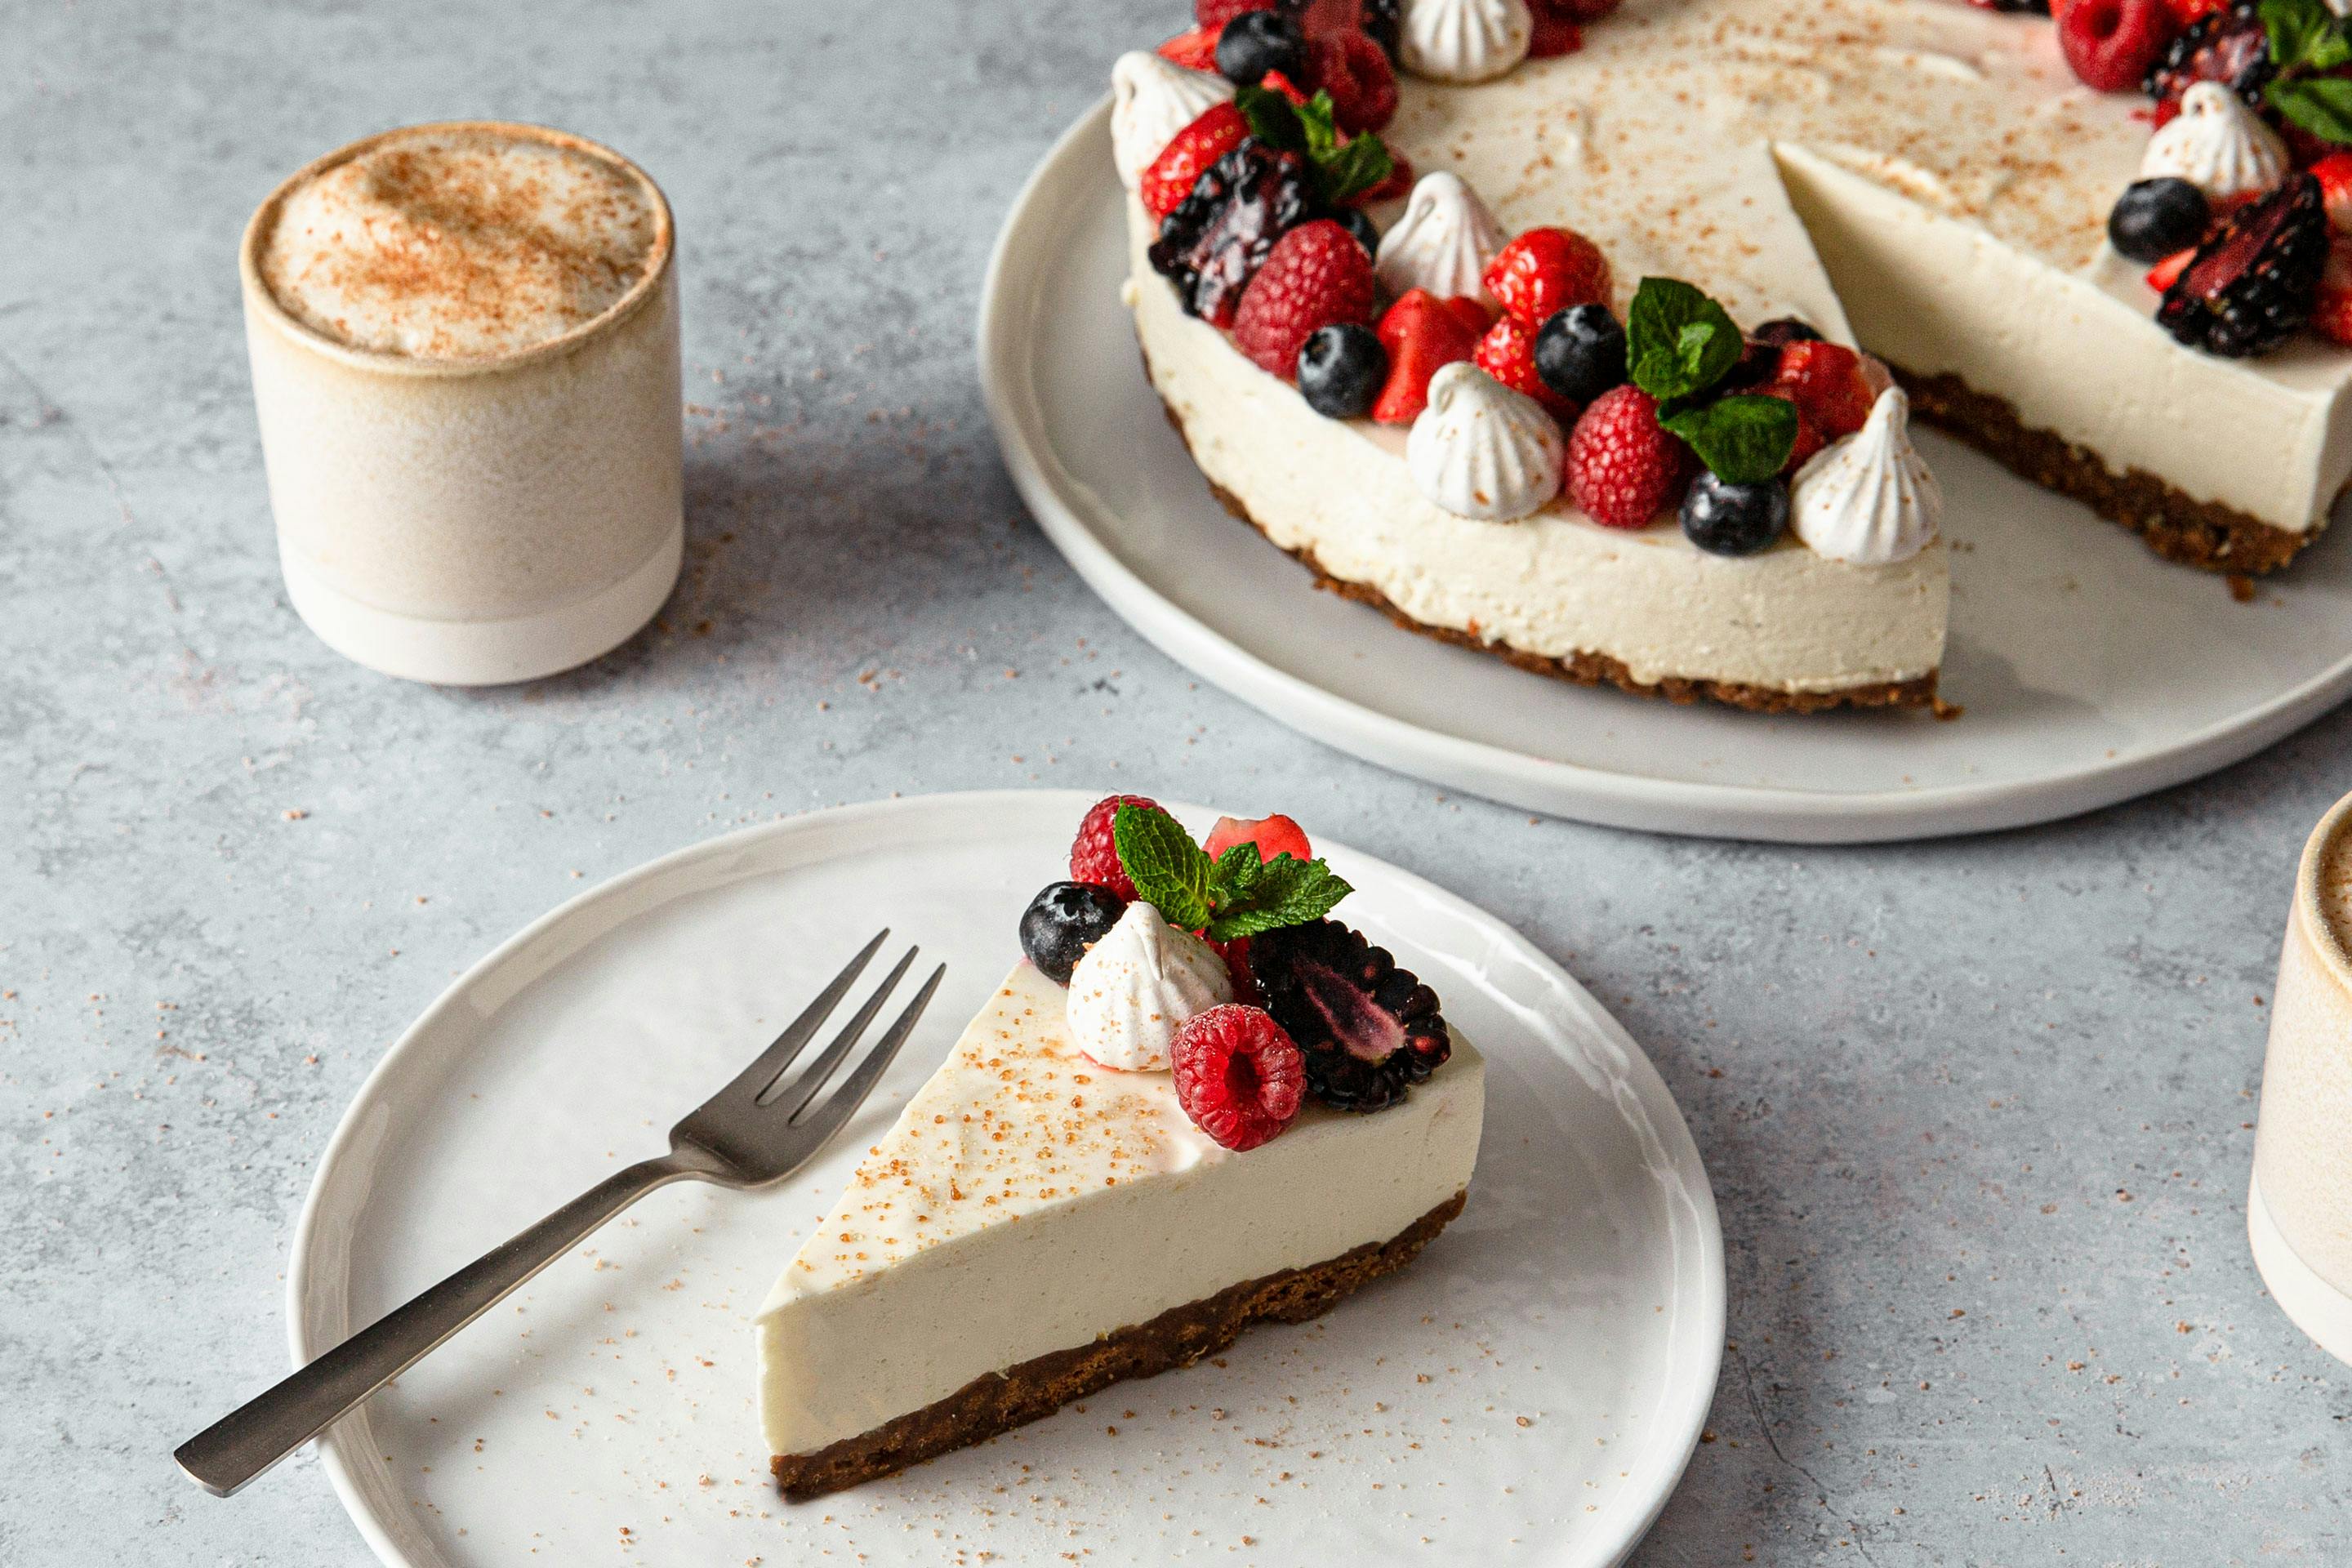 Cheesecake mit frischen Beeren garniert auf einer Kuchenplatte. Im Vordergrund ein Stück Cheesecake auf einem Teller mit Kuchengabel und einem Cappuccino in einem Becher.